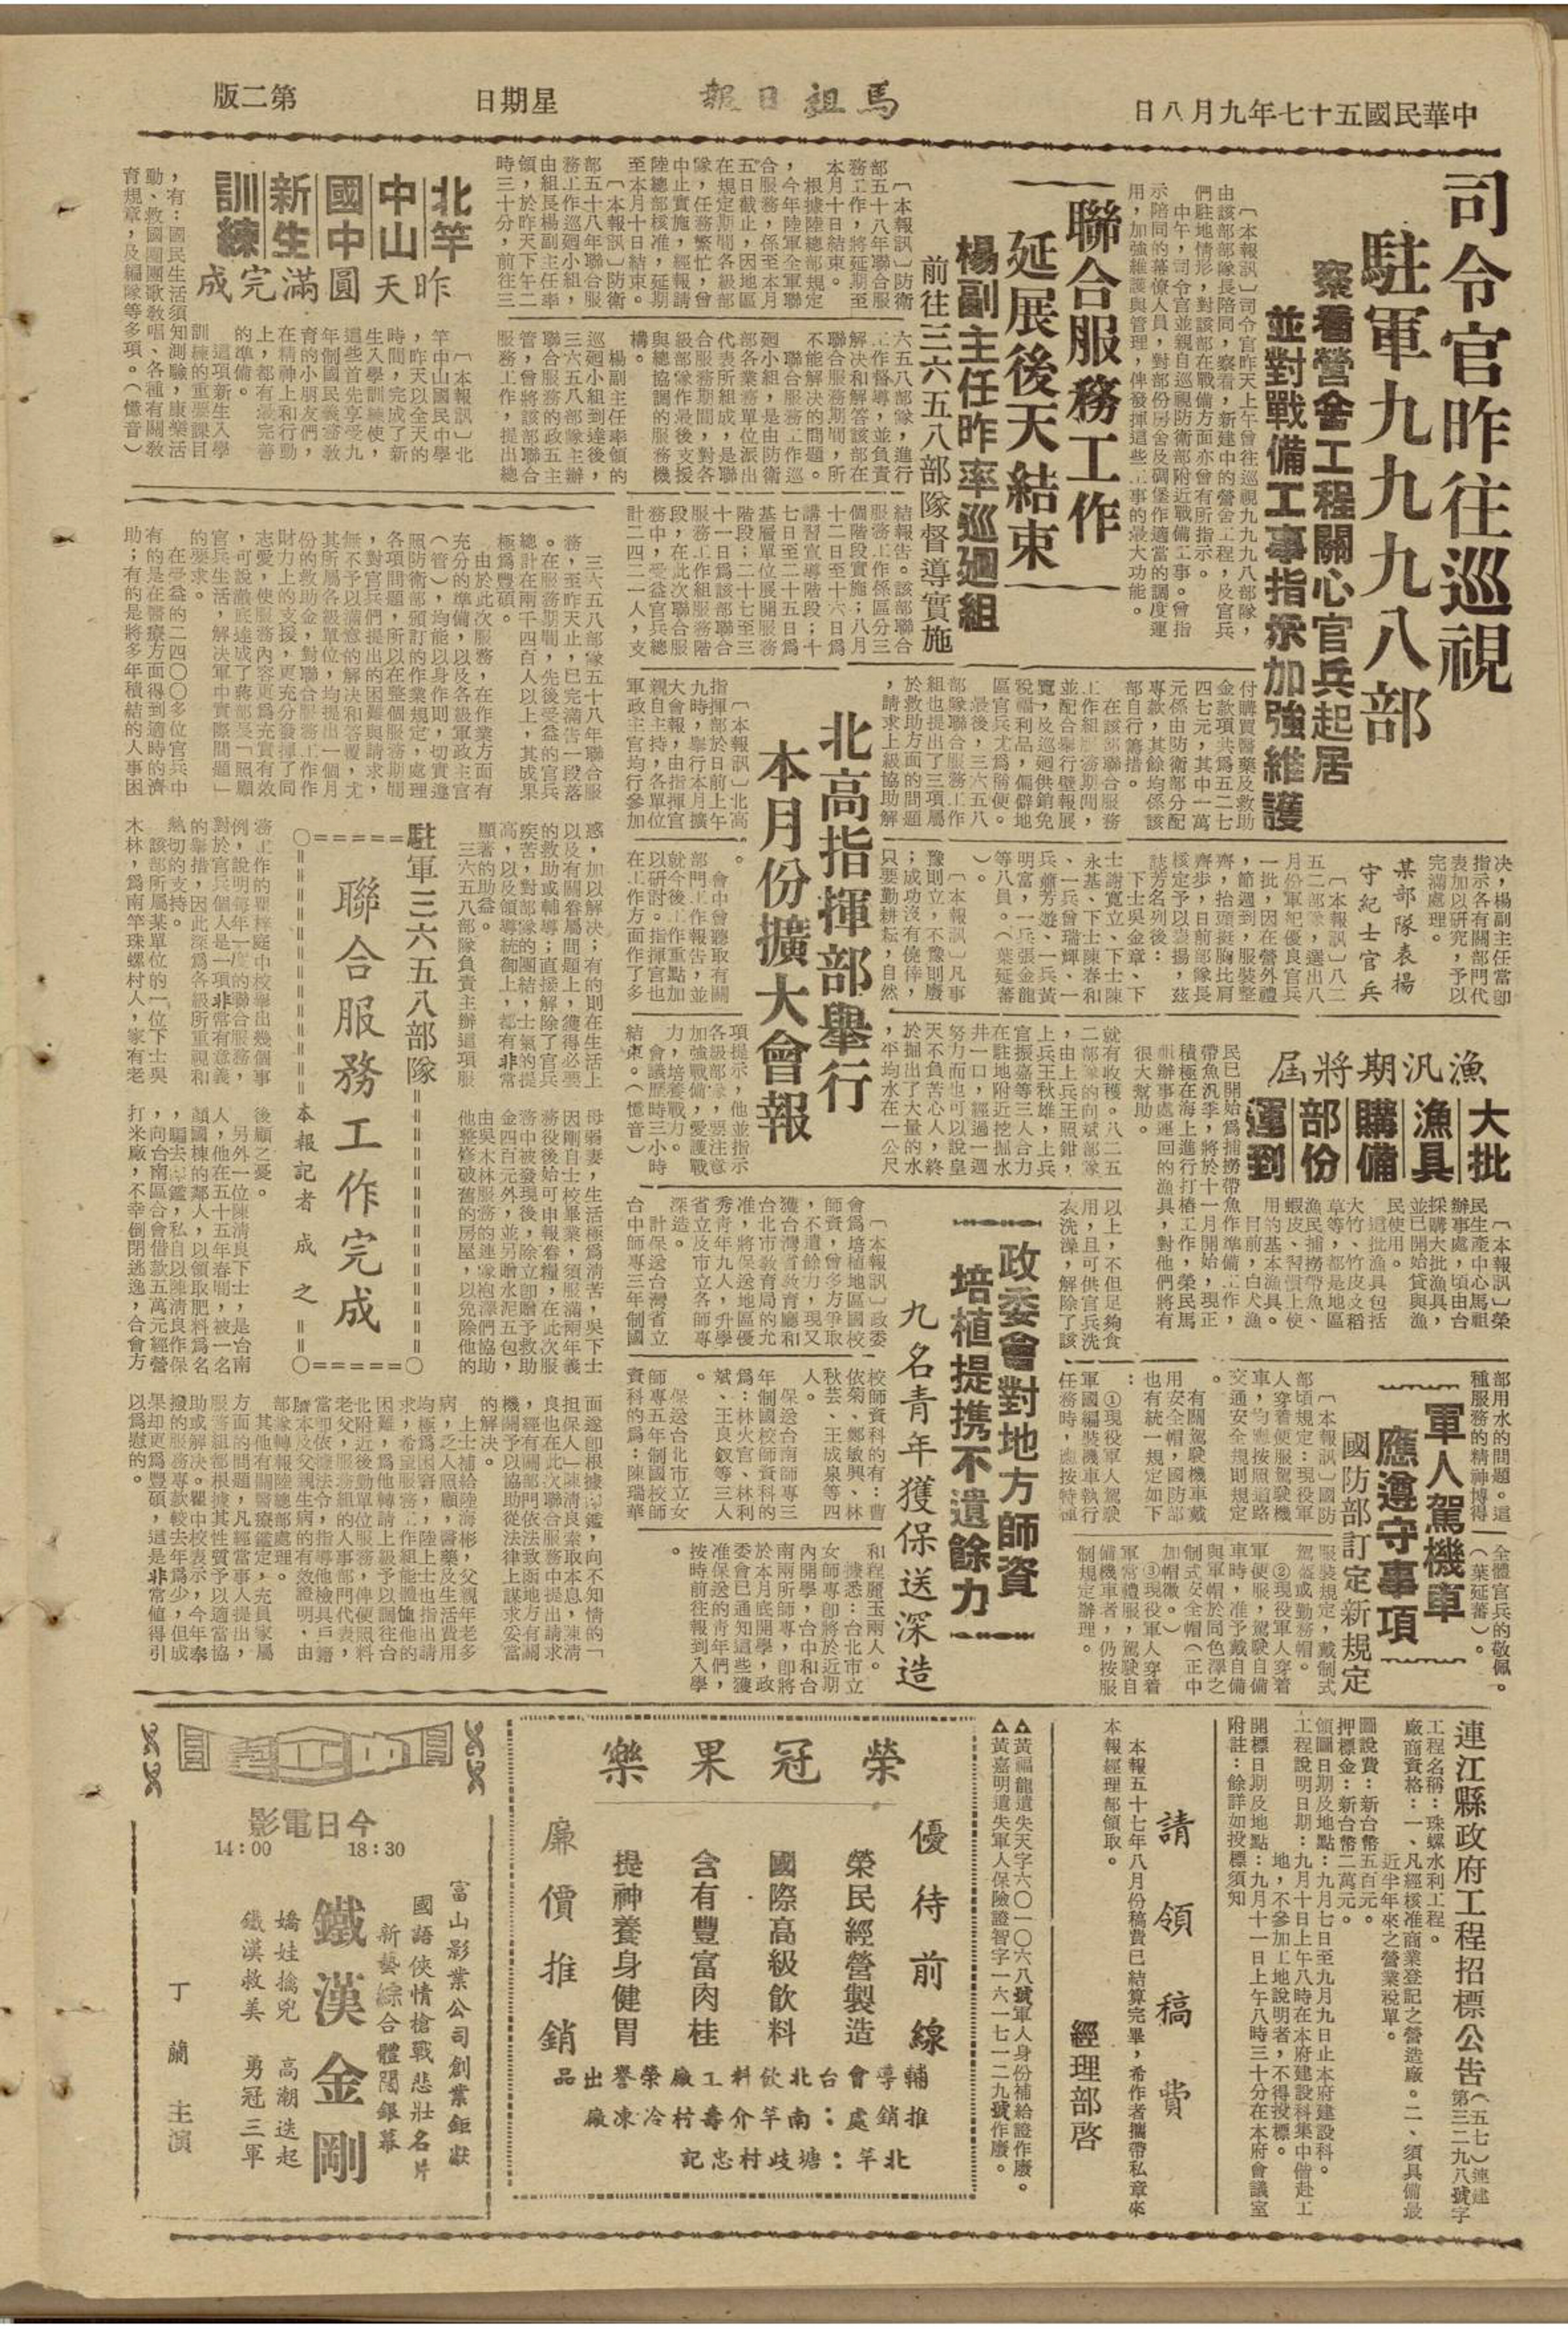 民國57年馬祖戰地政務委員會向臺灣省教育廳與台北市教育局爭取保送師資名額-《馬祖日報》